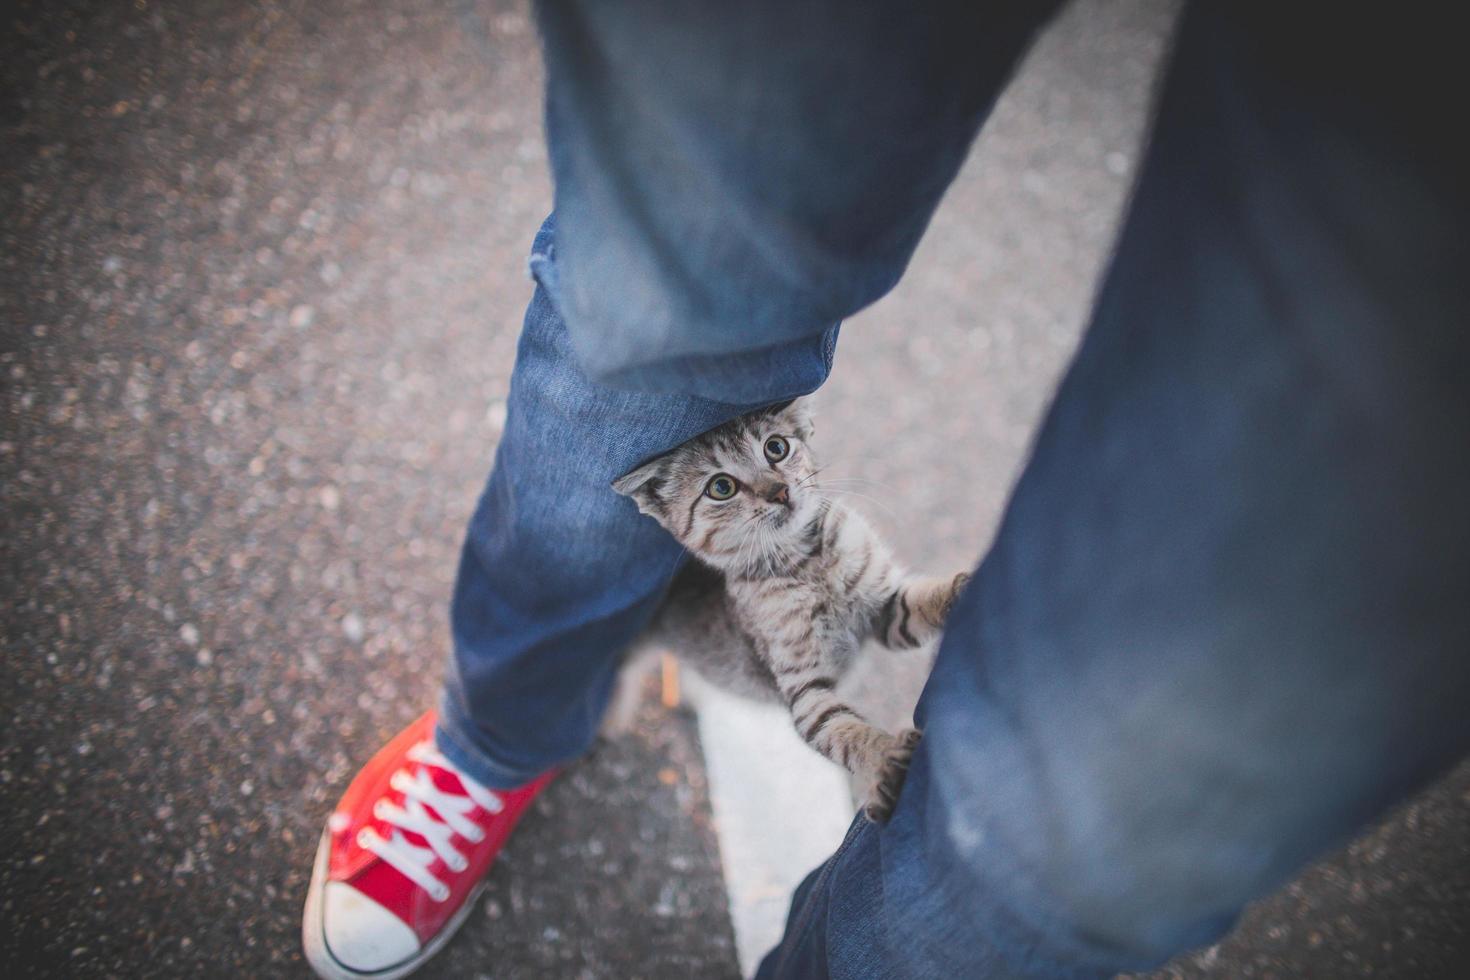 katt på benen på personen med jeans och tennisskor foto